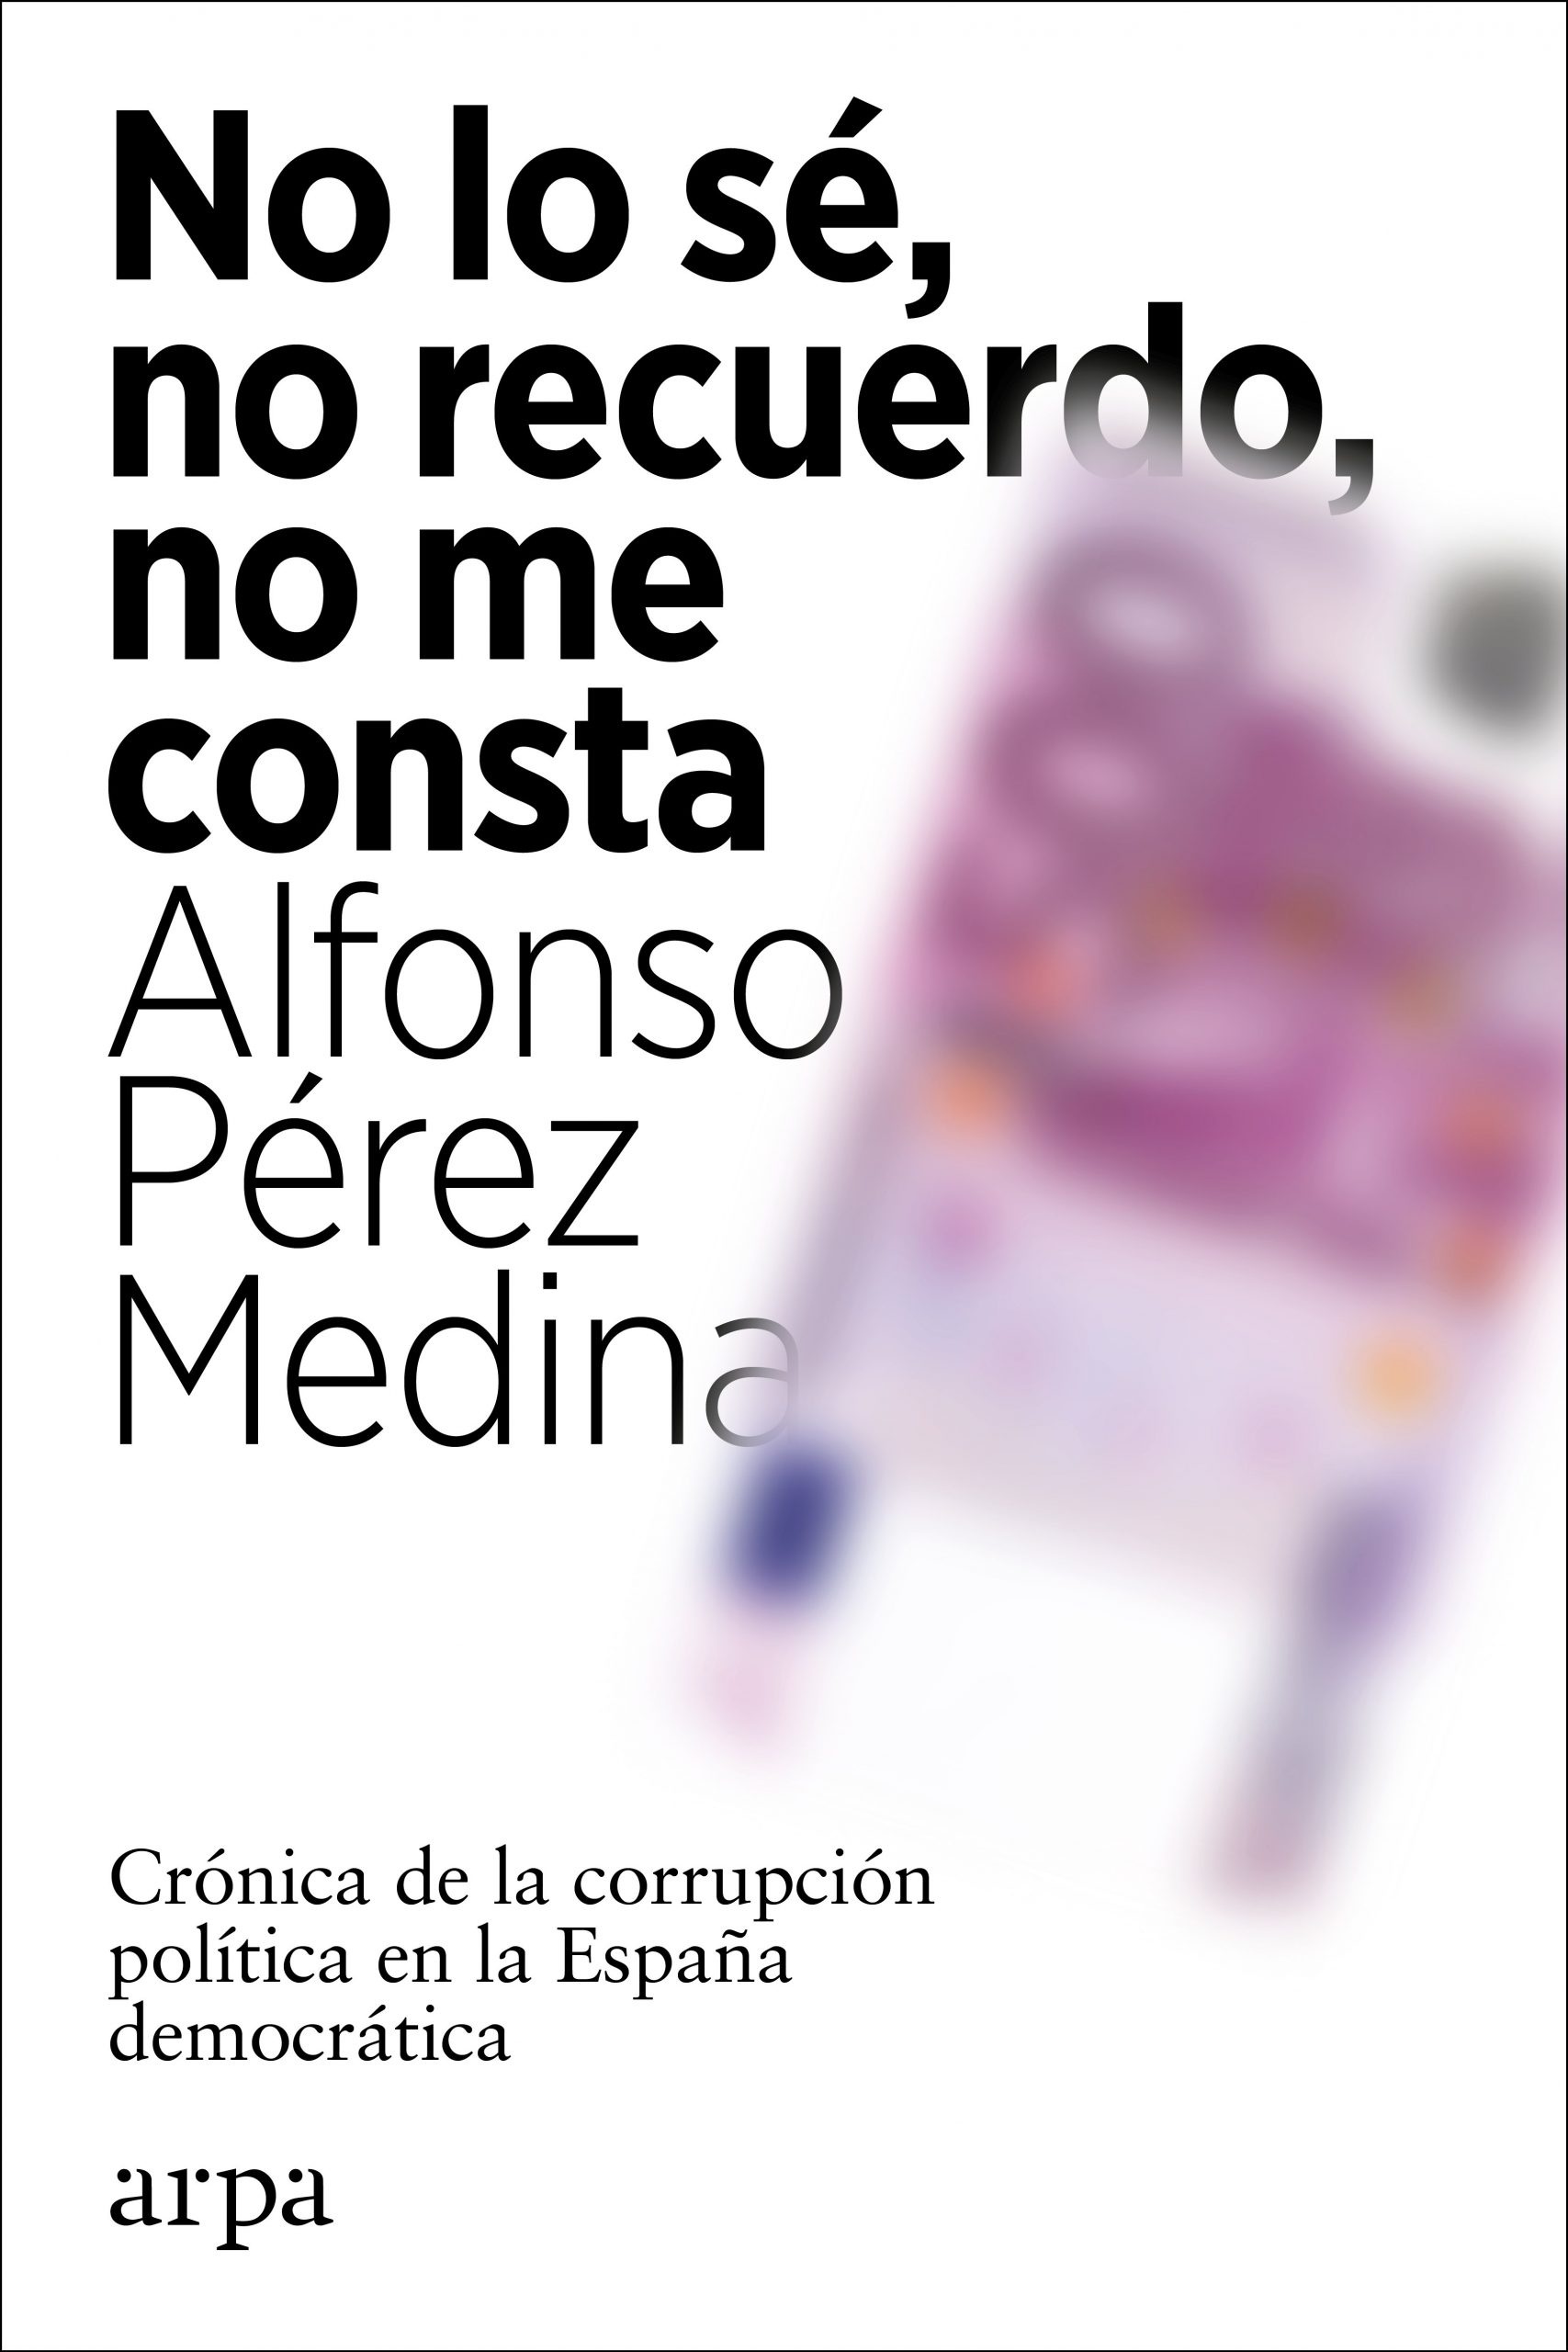 No lo sé, no recuerdo, no me consta "Crónica de la corrupción política en la España democrática". 